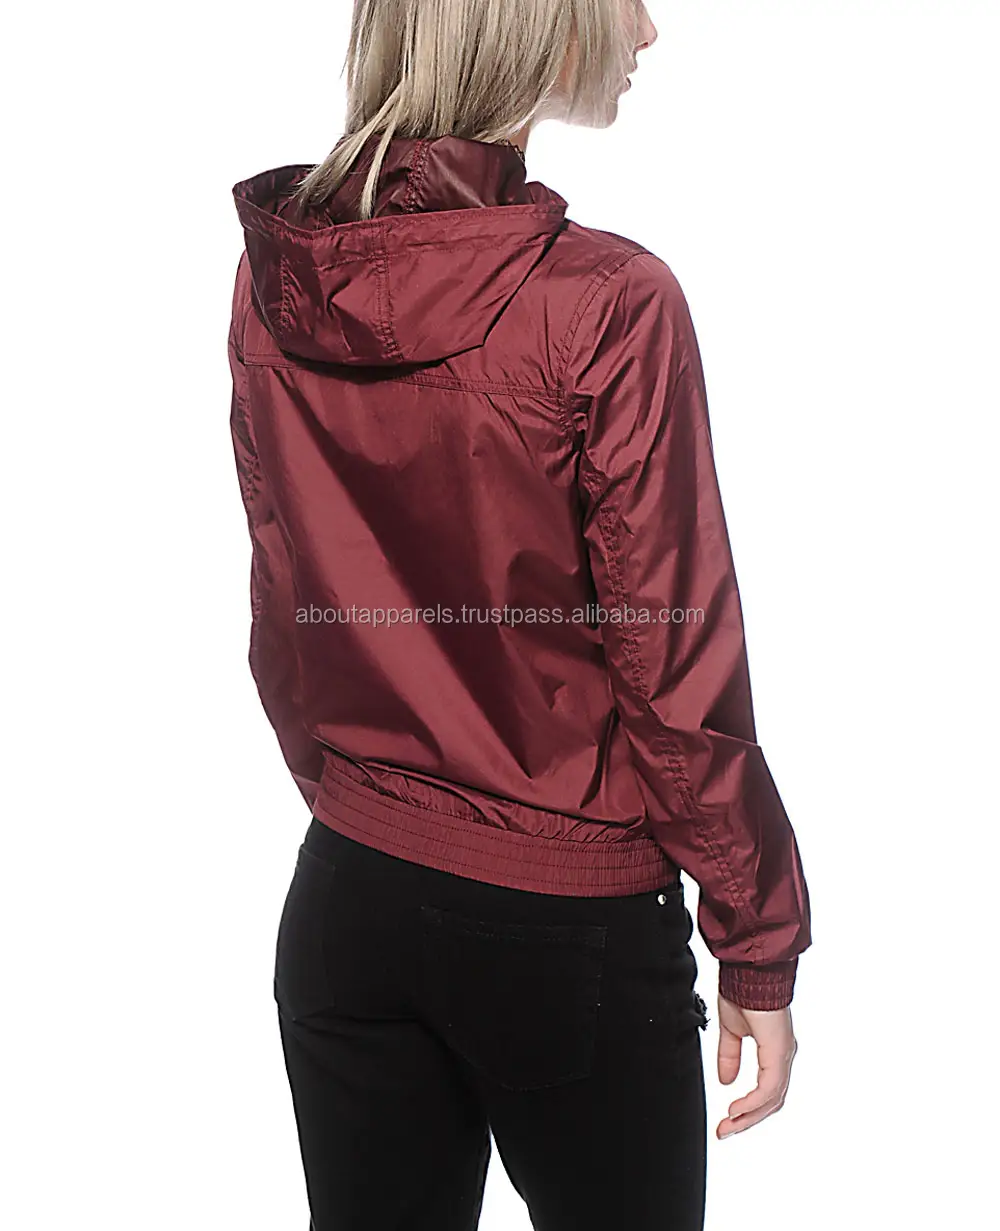 Giacche a vento a vento in Nylon 100% poliestere impermeabile metallizzato bicolore giacche cappotto donna anello cerniera roccia vuota